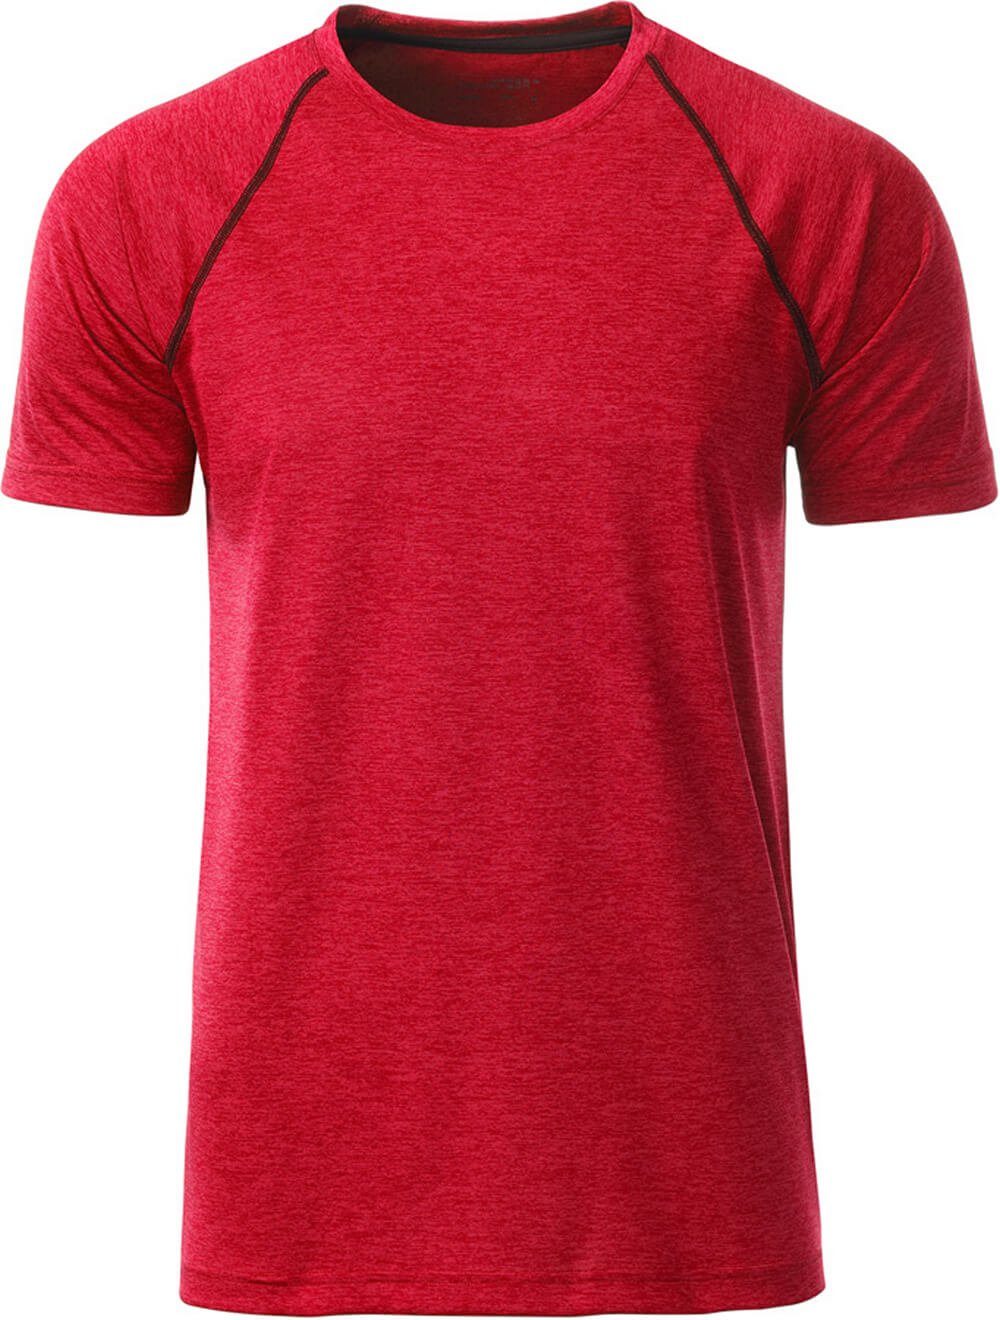 James & Nicholson Funktionsshirt James & Nicholson JN 496 Herren Funktions-Shirt schnell trocknend red Melange/titan